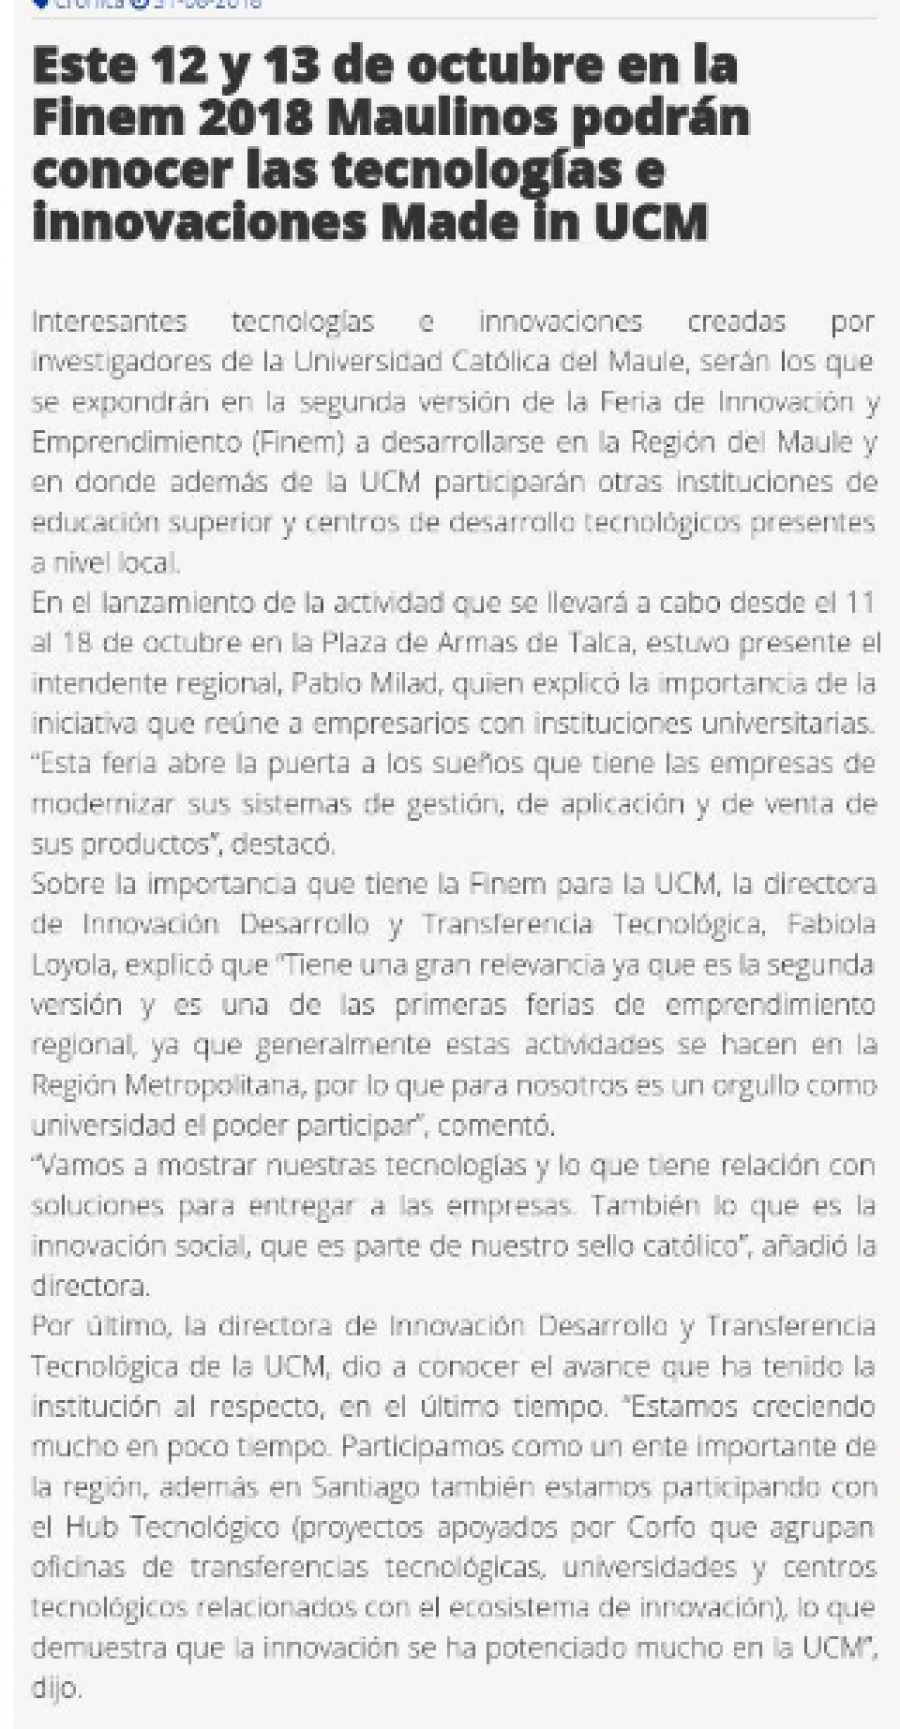 31 de agosto en Diario El Heraldo: “Este 12 y 13 de octubre en la Finem 2018 Maulinos podrán conocer las tecnologías e innovaciones Made in UCM”